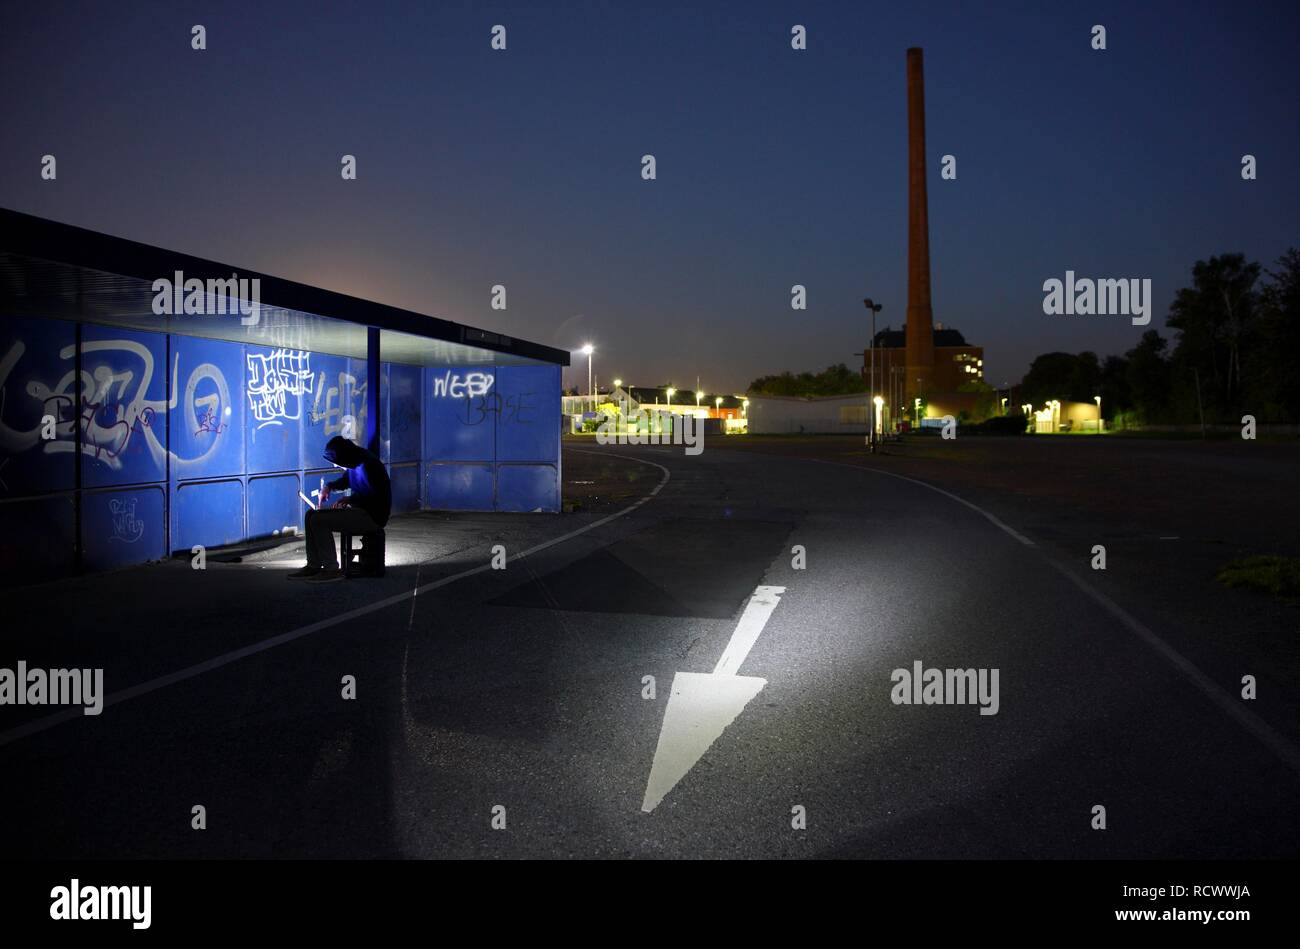 El hombre navegando en un ordenador portátil en una parada de autobús por la noche, la imagen simbólica de la piratería informática, los delitos informáticos, cibercriminalidad Foto de stock